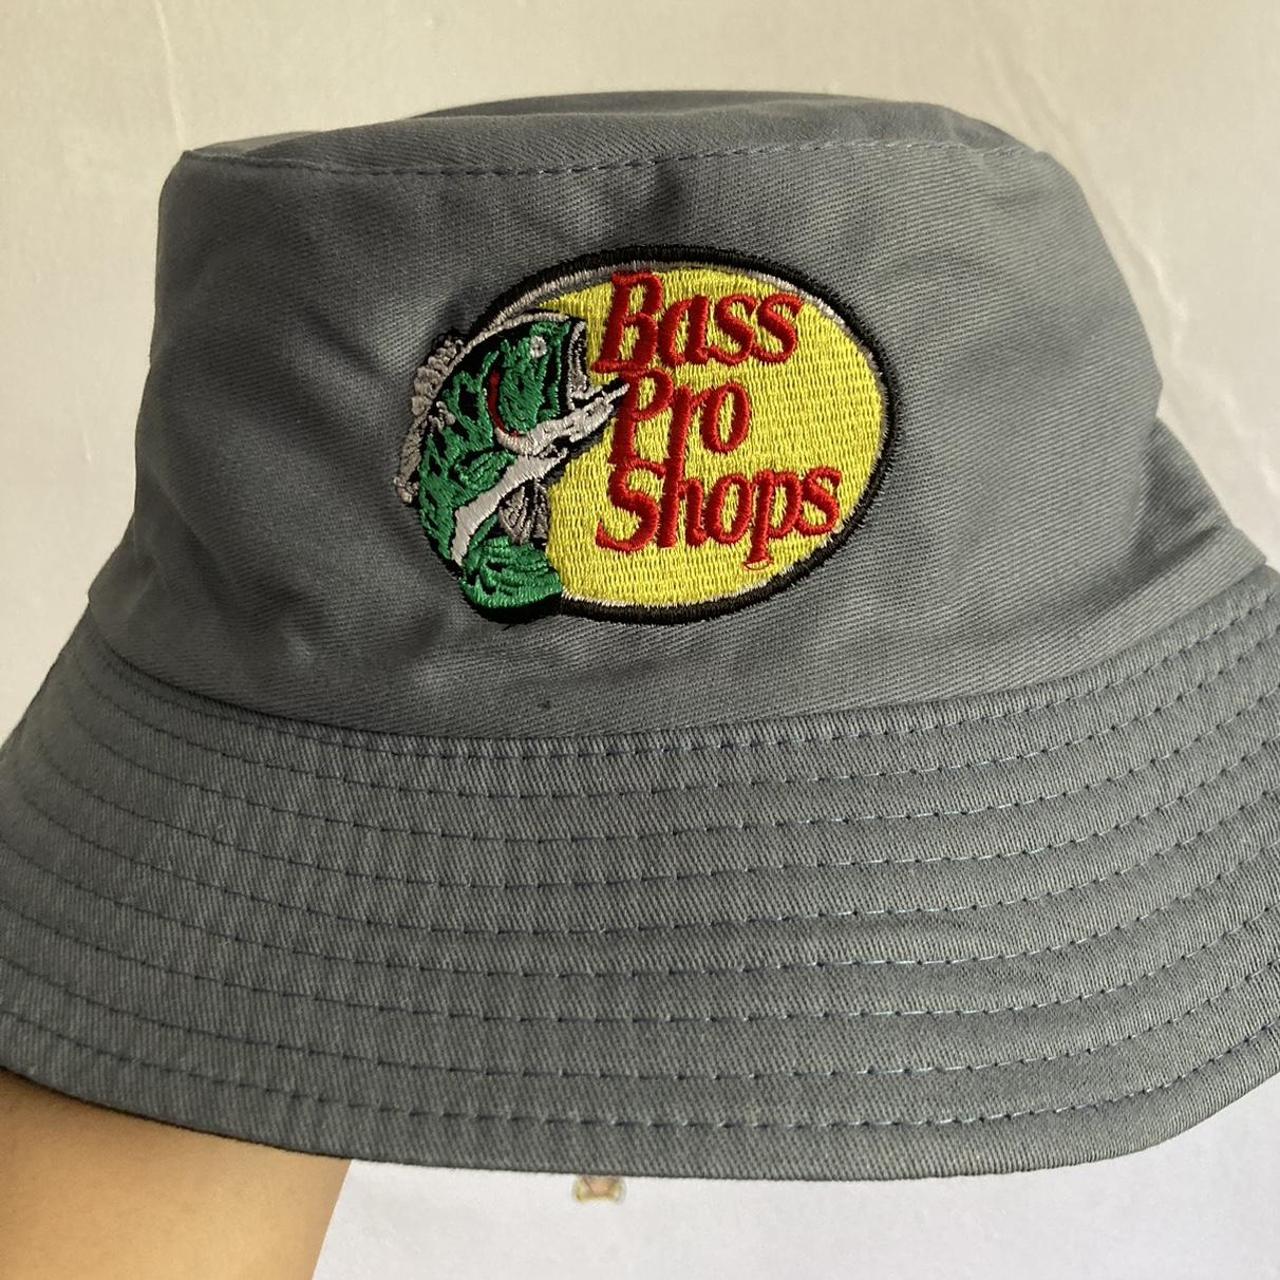 Bass Pro Shop Bucket hats - Depop